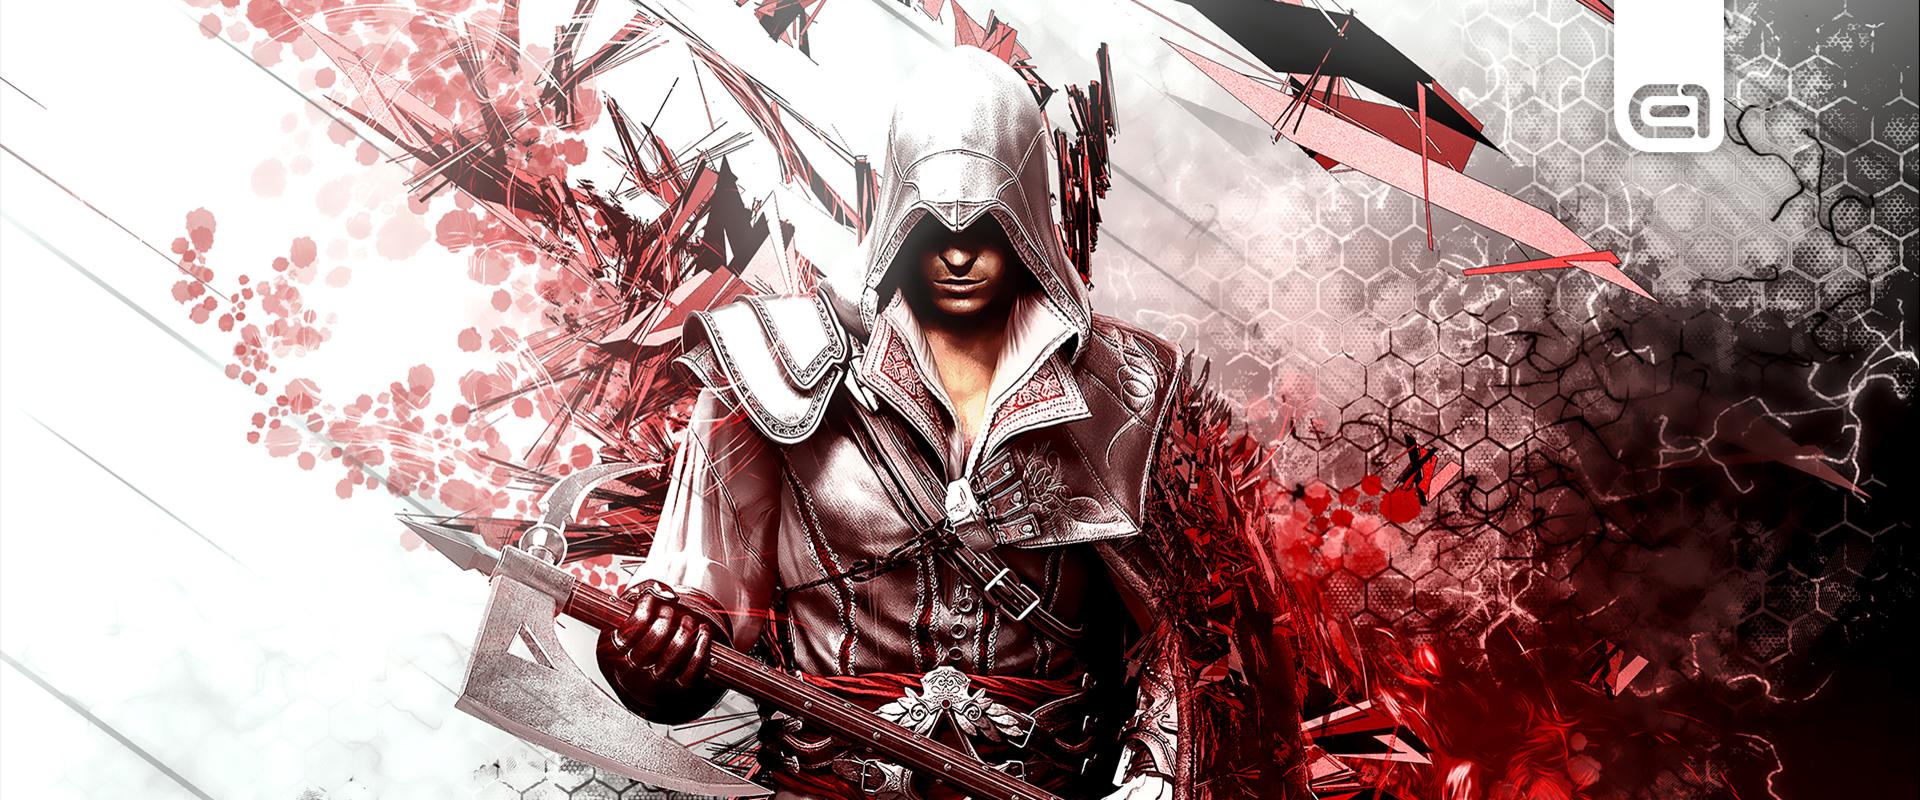 Ősszel visszatérhetnek a legjobb Assassin's Creed-karakterek?